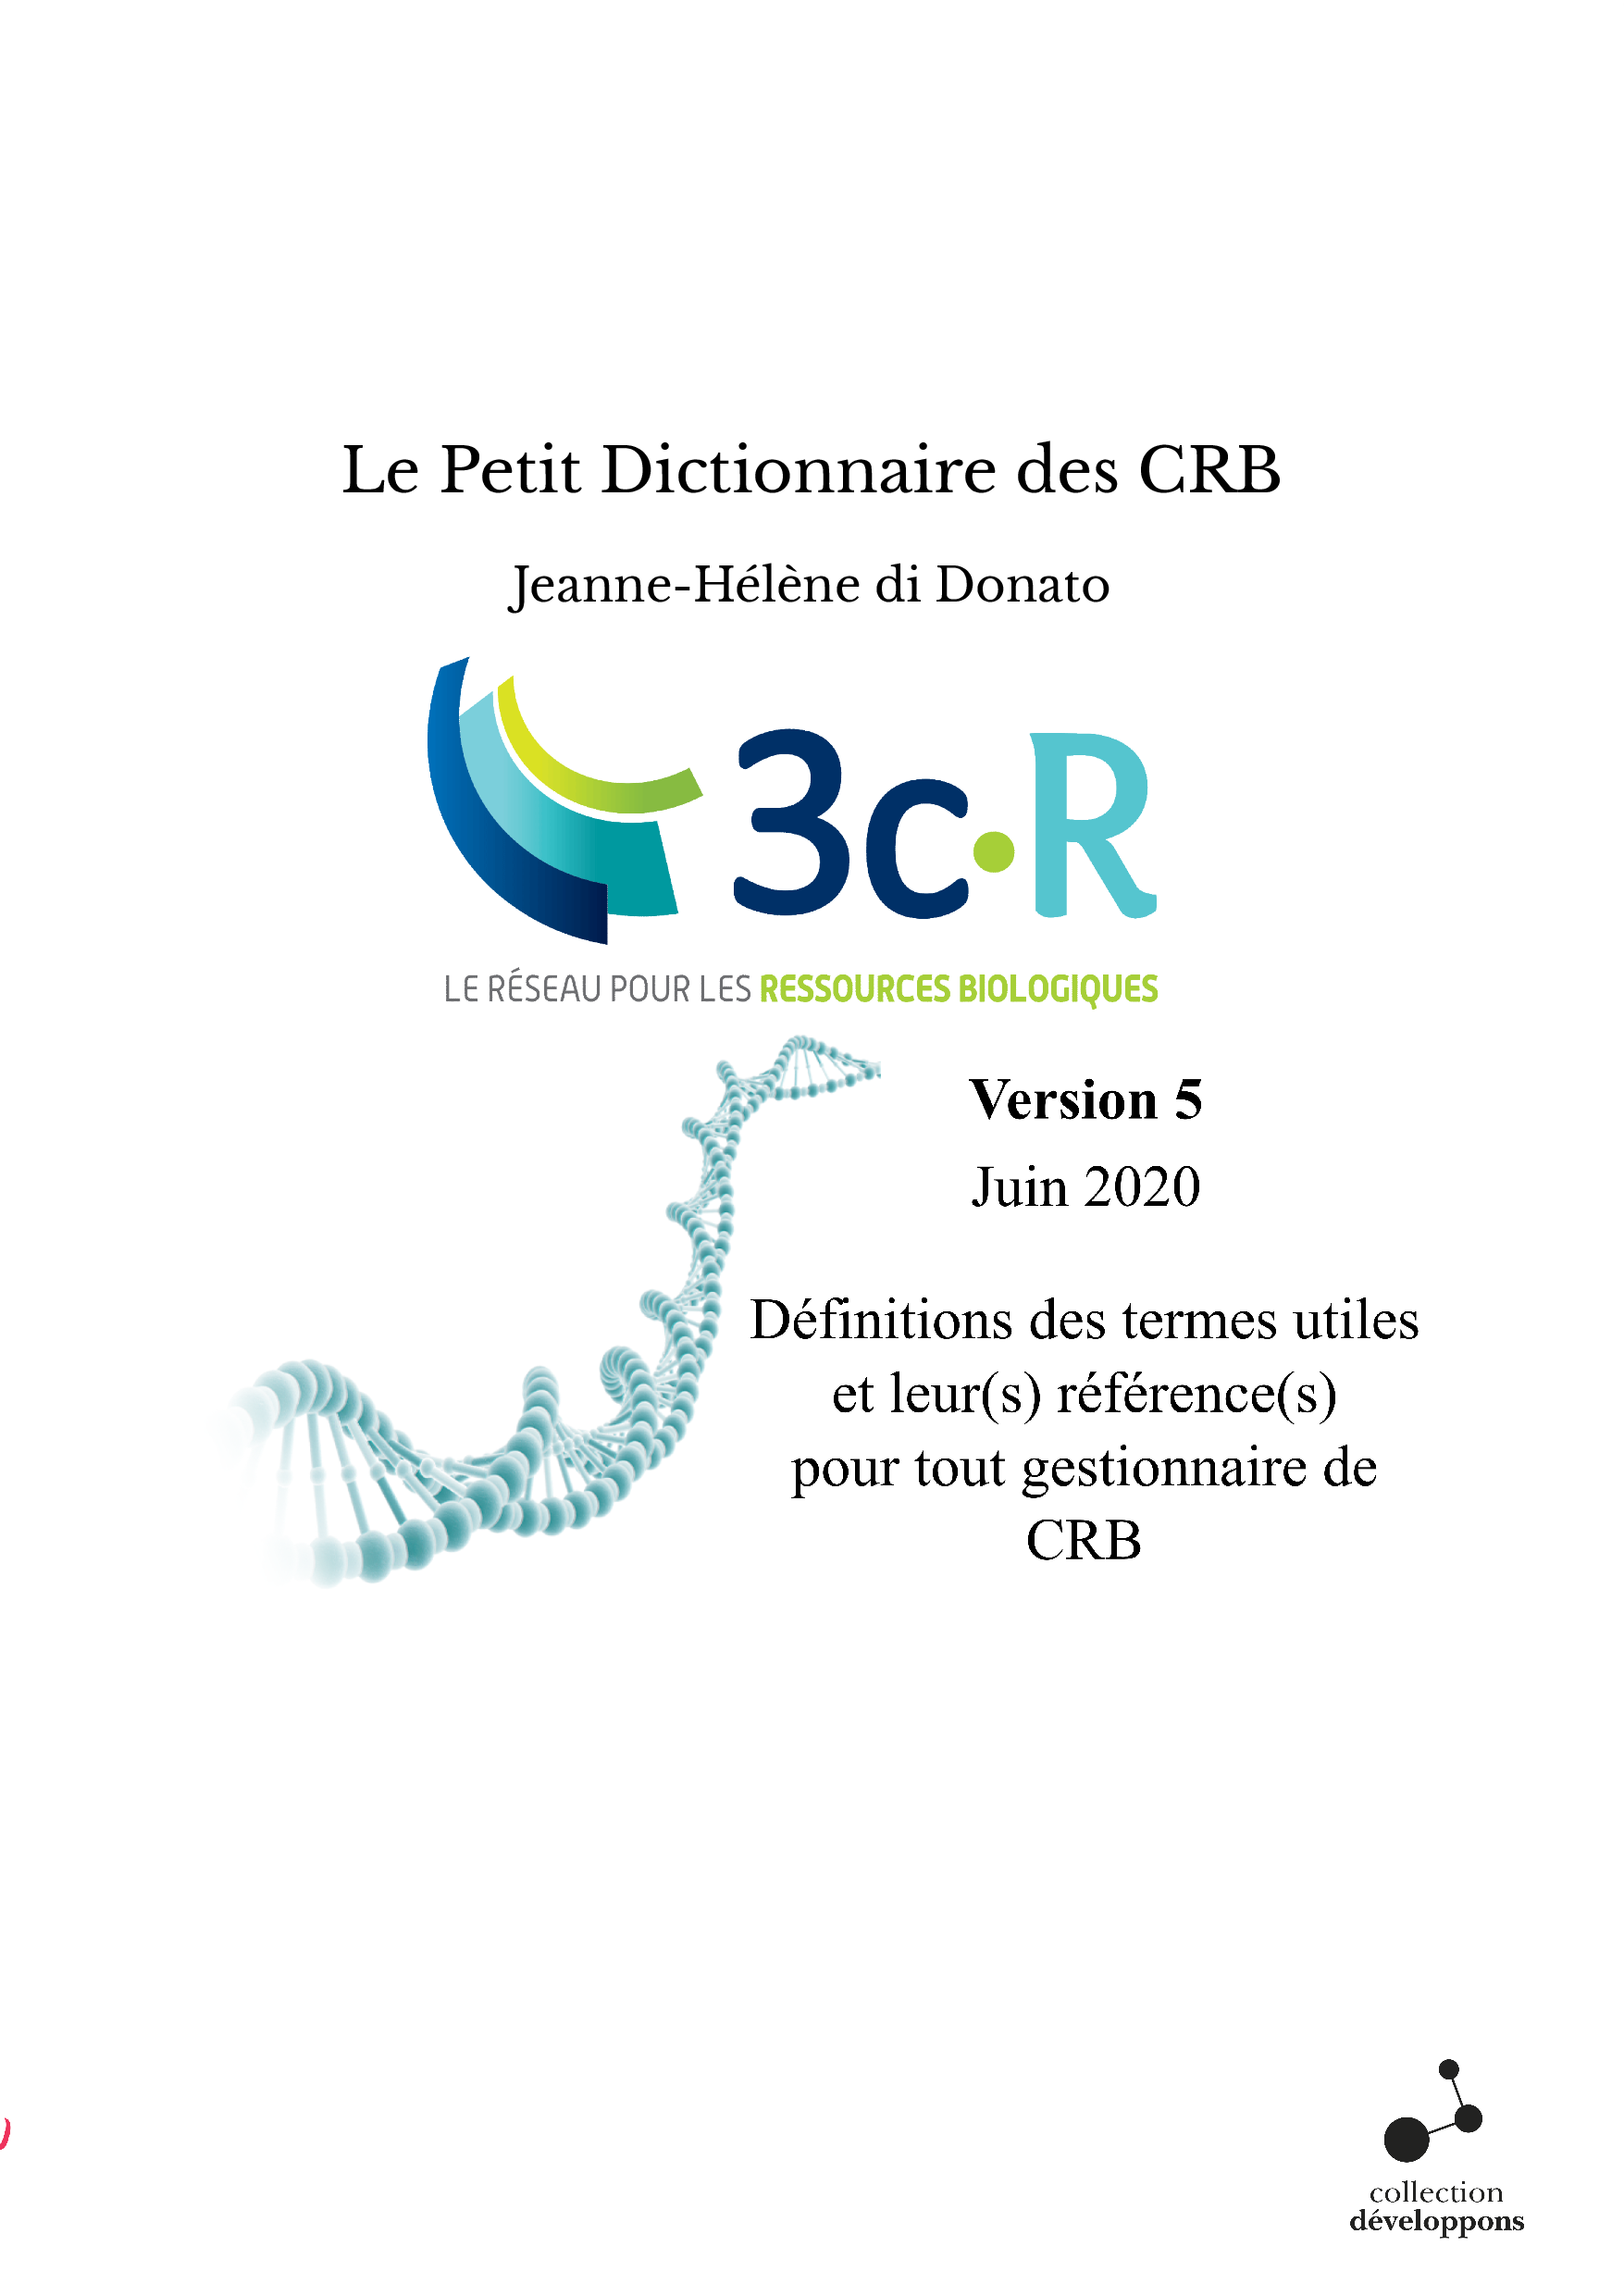 Le Petit Dictionnaire des CRB